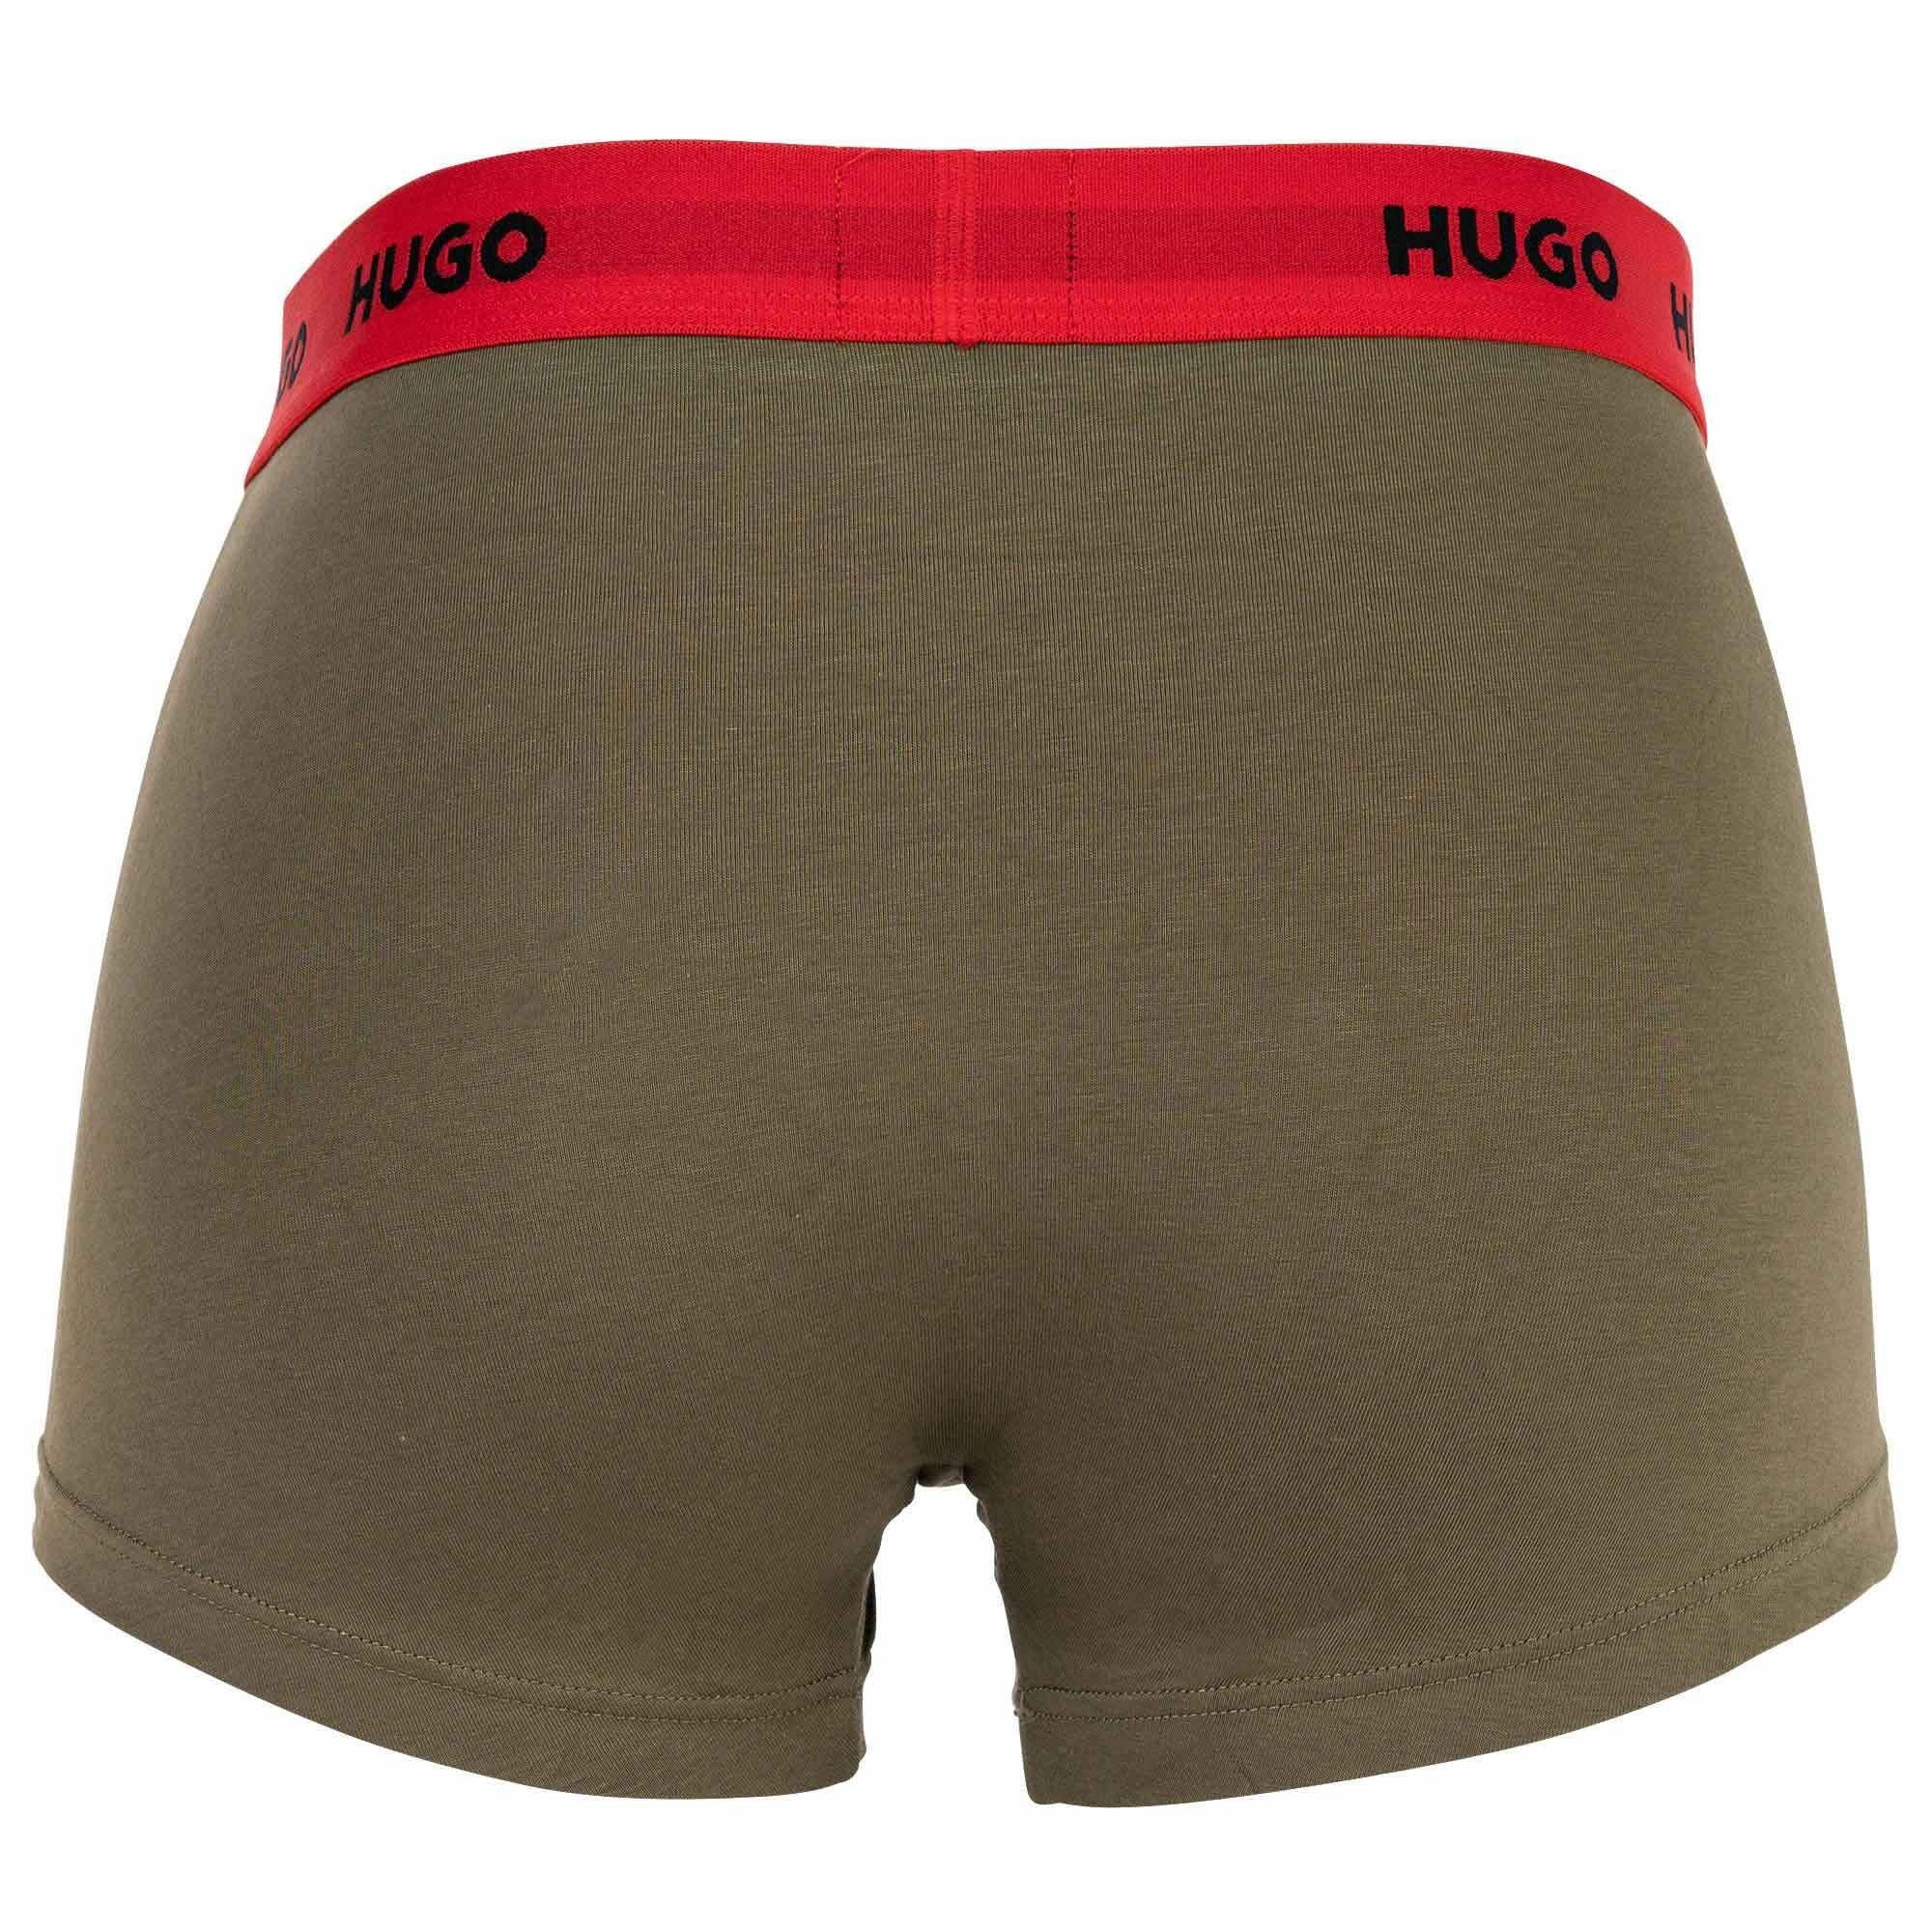 - Triplet Trunks Herren 3er HUGO Boxer Shorts, Pack Boxer Blau/Grün/Schwarz